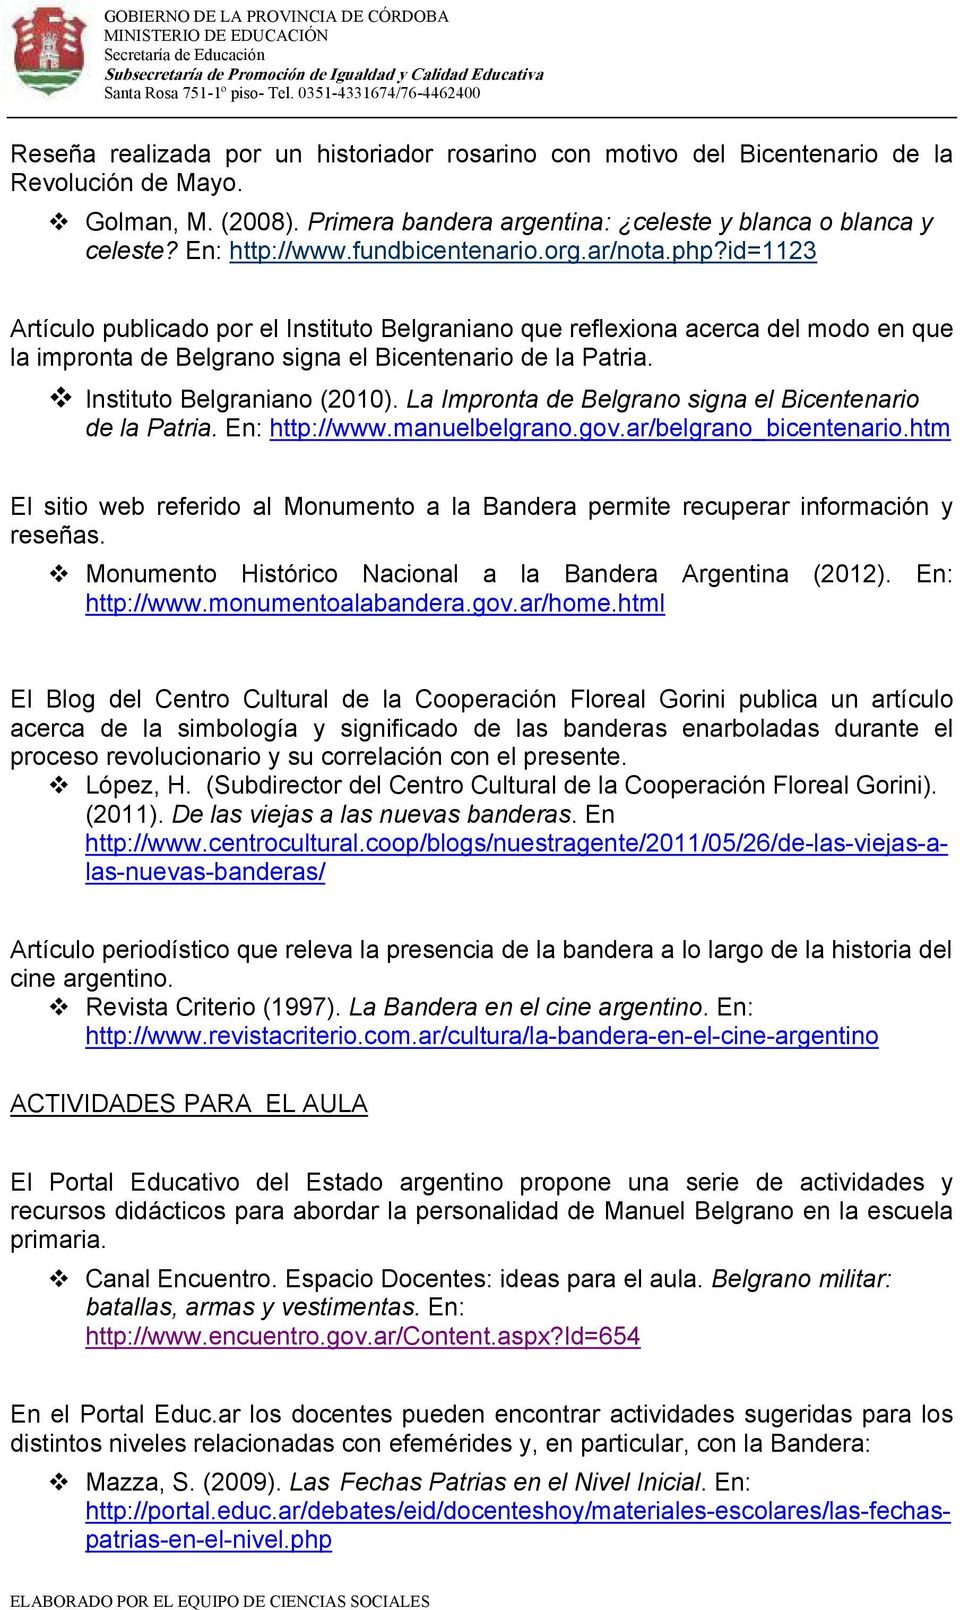 Instituto Belgraniano (2010). La Impronta de Belgrano signa el Bicentenario de la Patria. En: http://www.manuelbelgrano.gov.ar/belgrano_bicentenario.